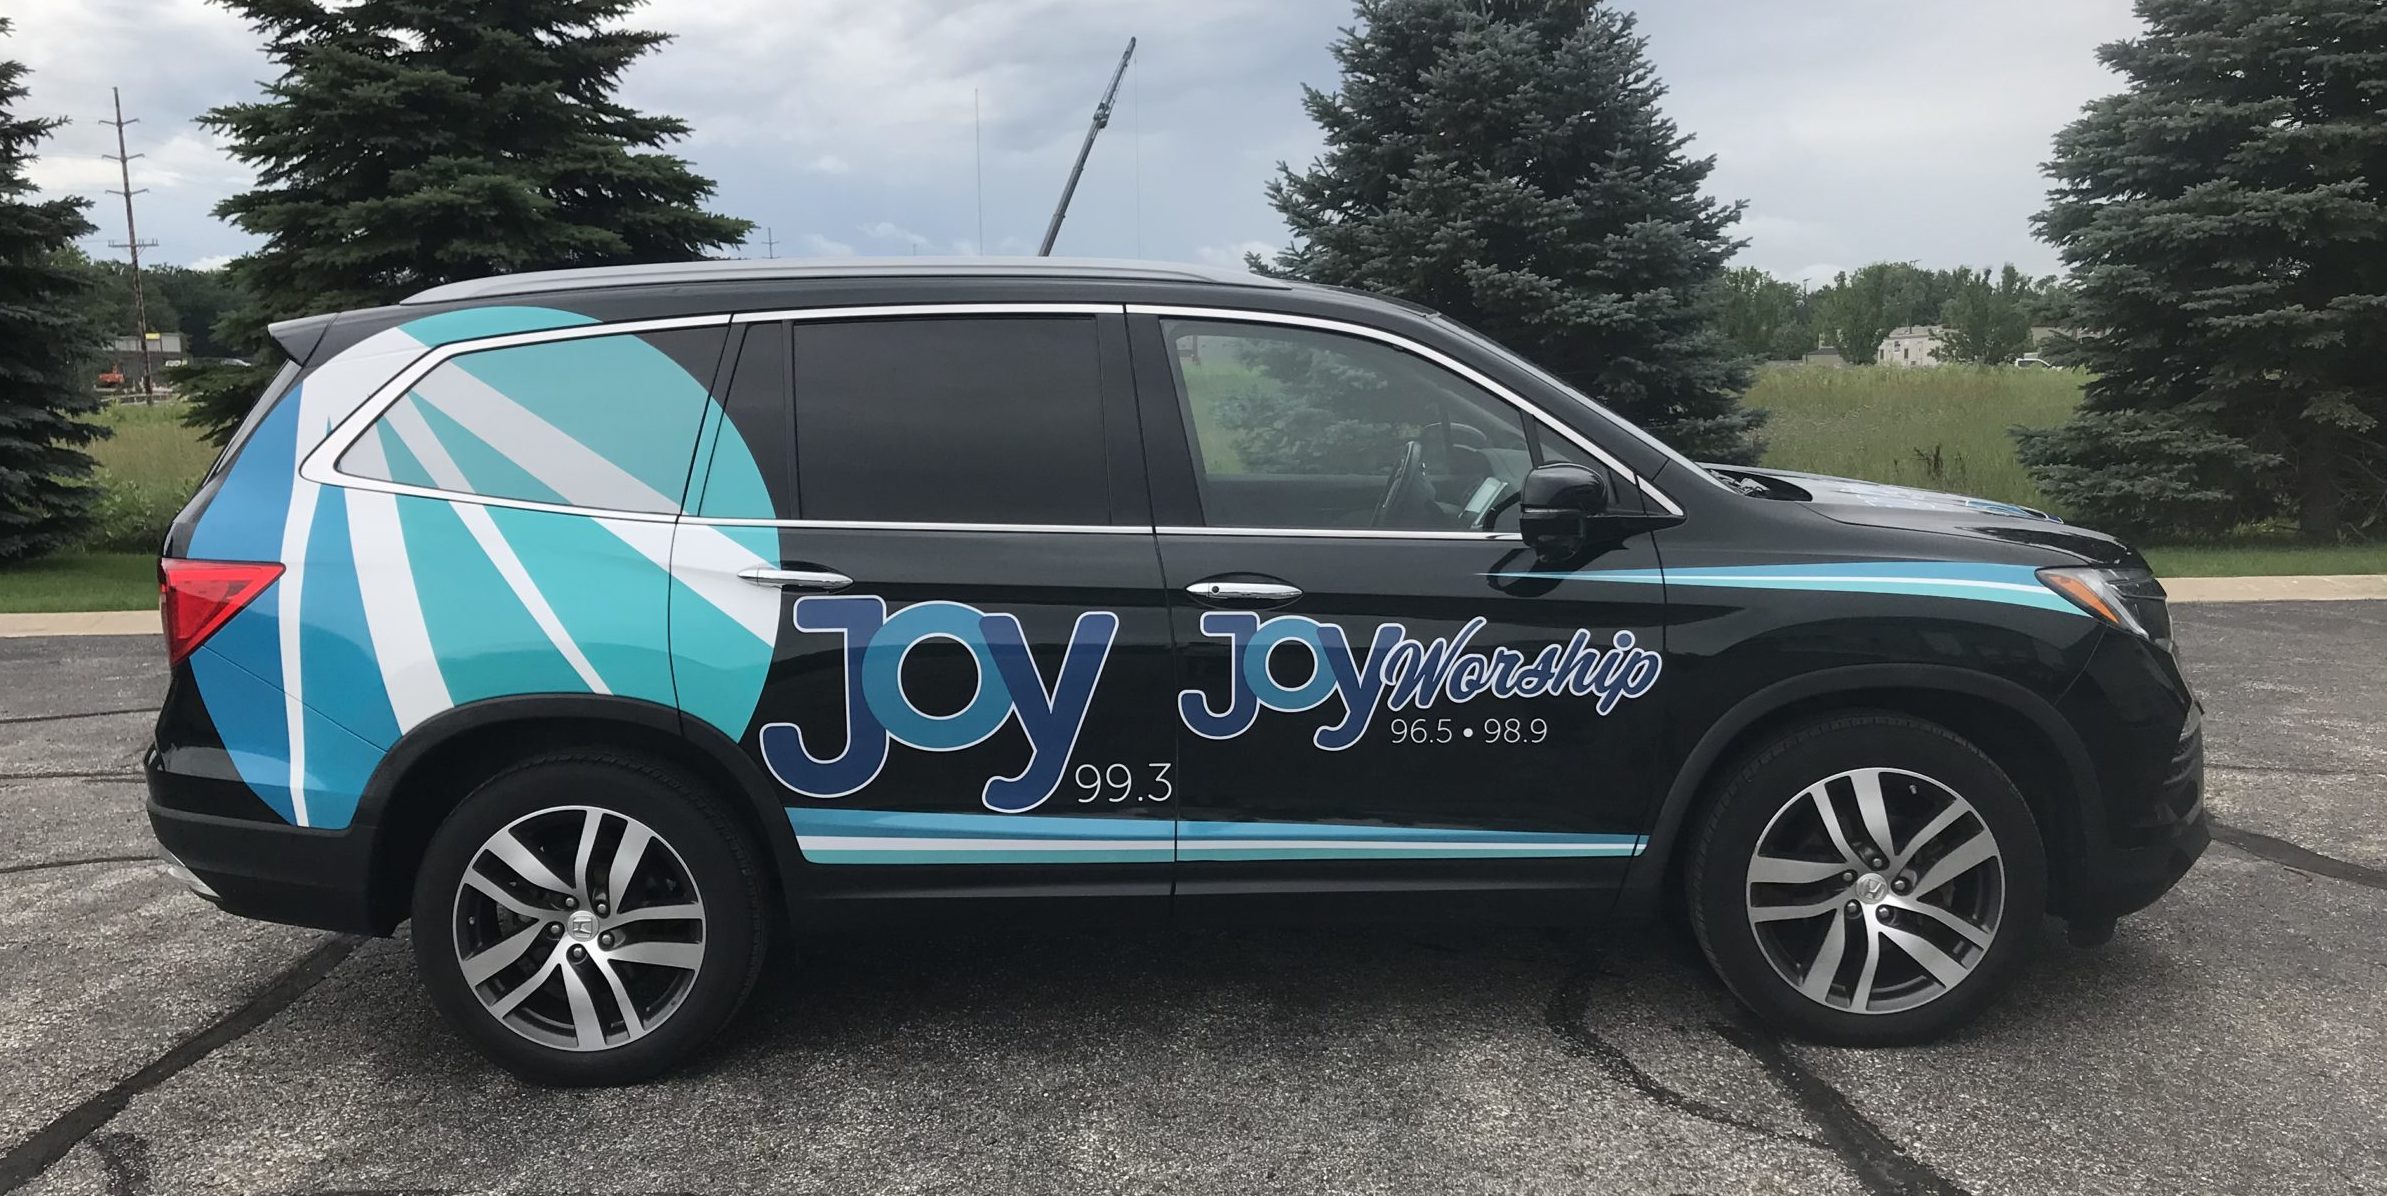 Joy 99 Vinyl Vehicle Graphics